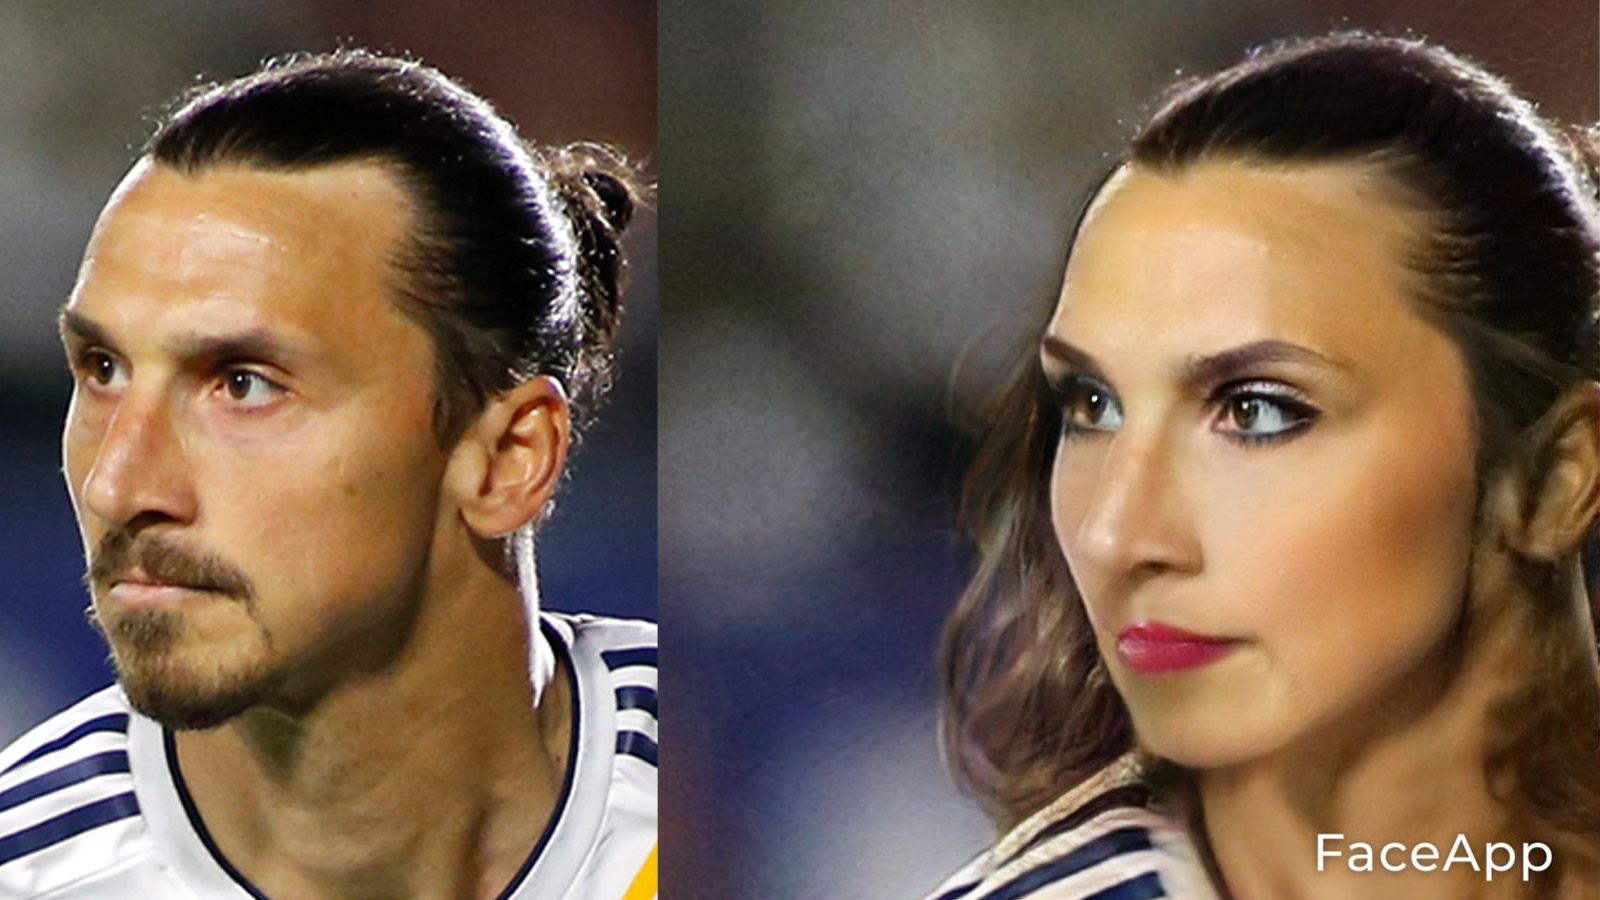 
                <strong>Zlatan Ibrahimovic</strong><br>
                Zlatana wäre eine Göttin gewesen. Die Beste und die Schönste. Zumindest in ihren Augen. Ganz der "Bruder" halt. 
              